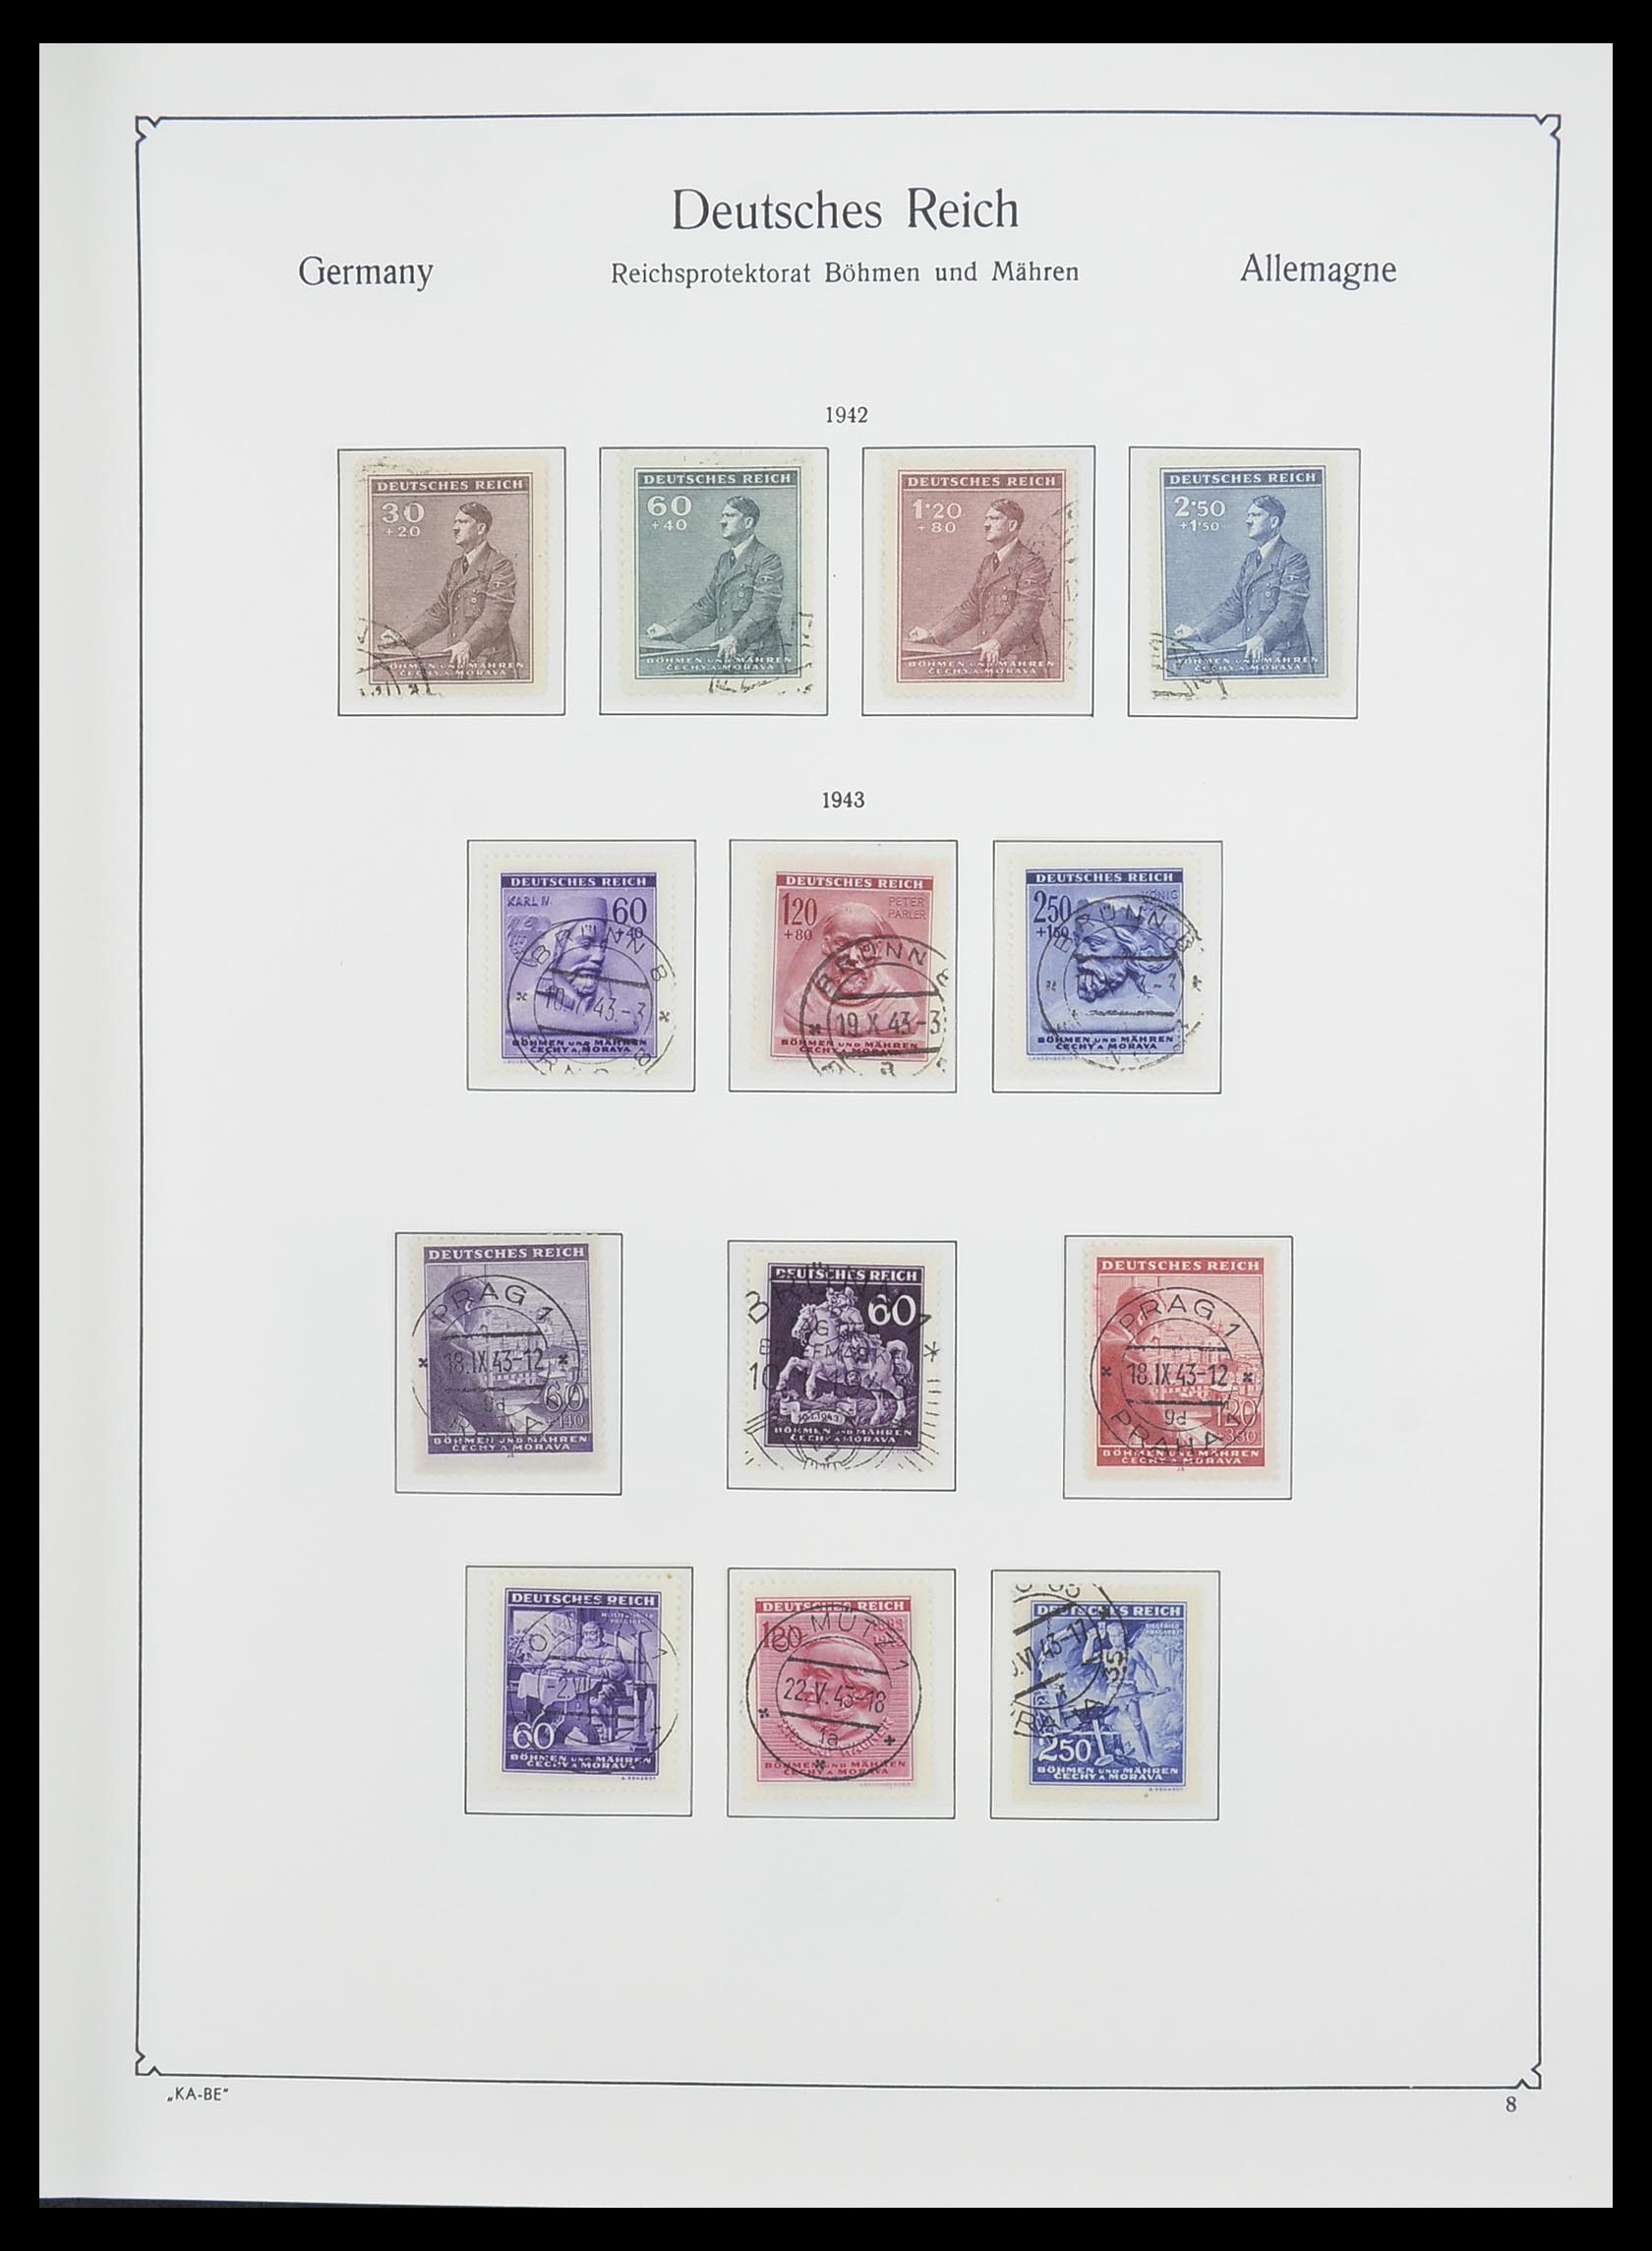 33360 014 - Stamp collection 33360 German occupation 2nd world war 1939-1945.